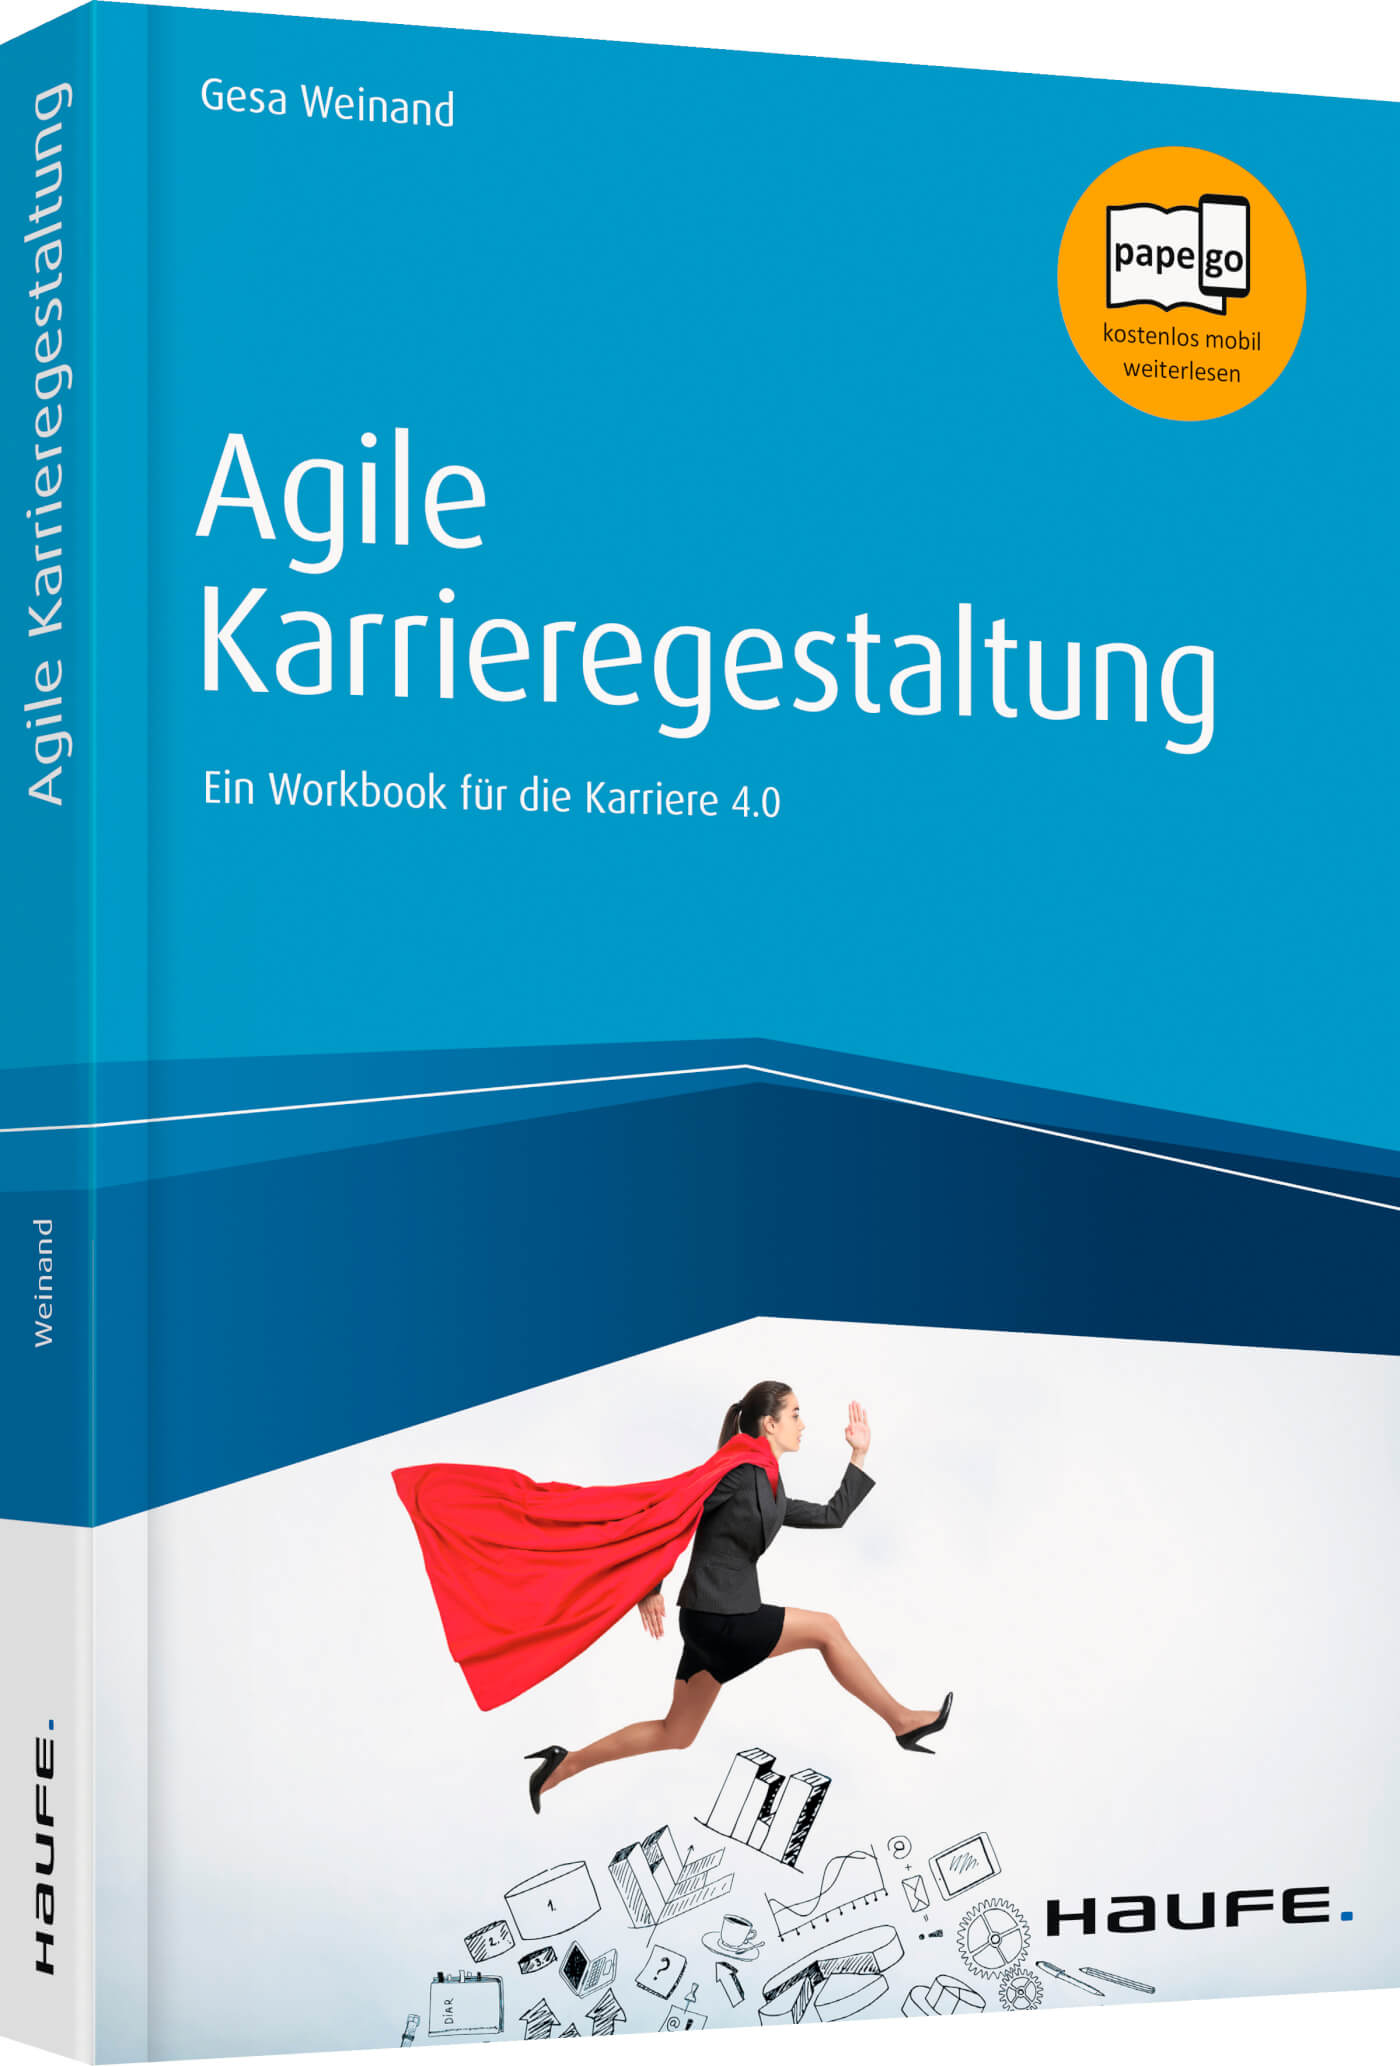 Agile Karrieregestaltung: Ein Workbook für die Karriere 4.0